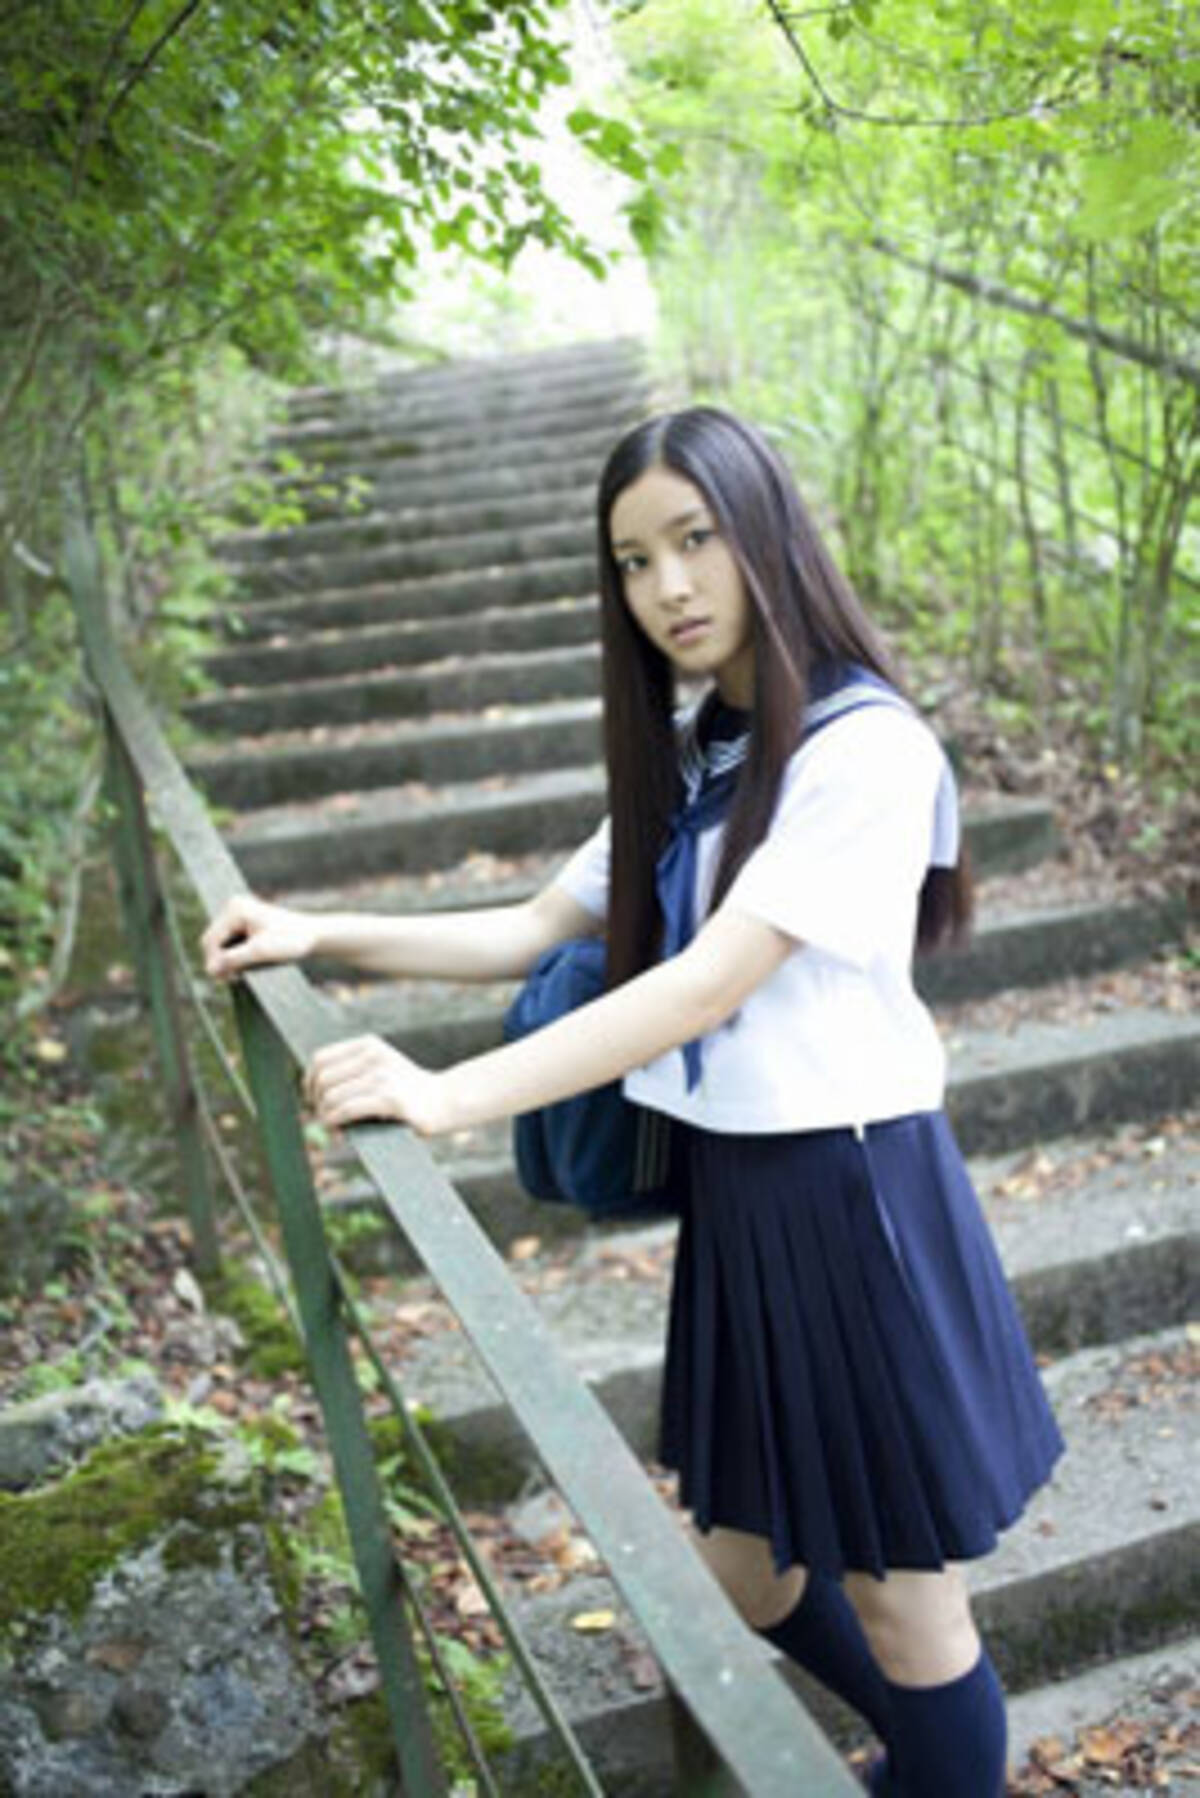 鈴木先生 ヒロイン役で話題の美少女 土屋太鳳 が初写真集をリリース 11年10月13日 エキサイトニュース